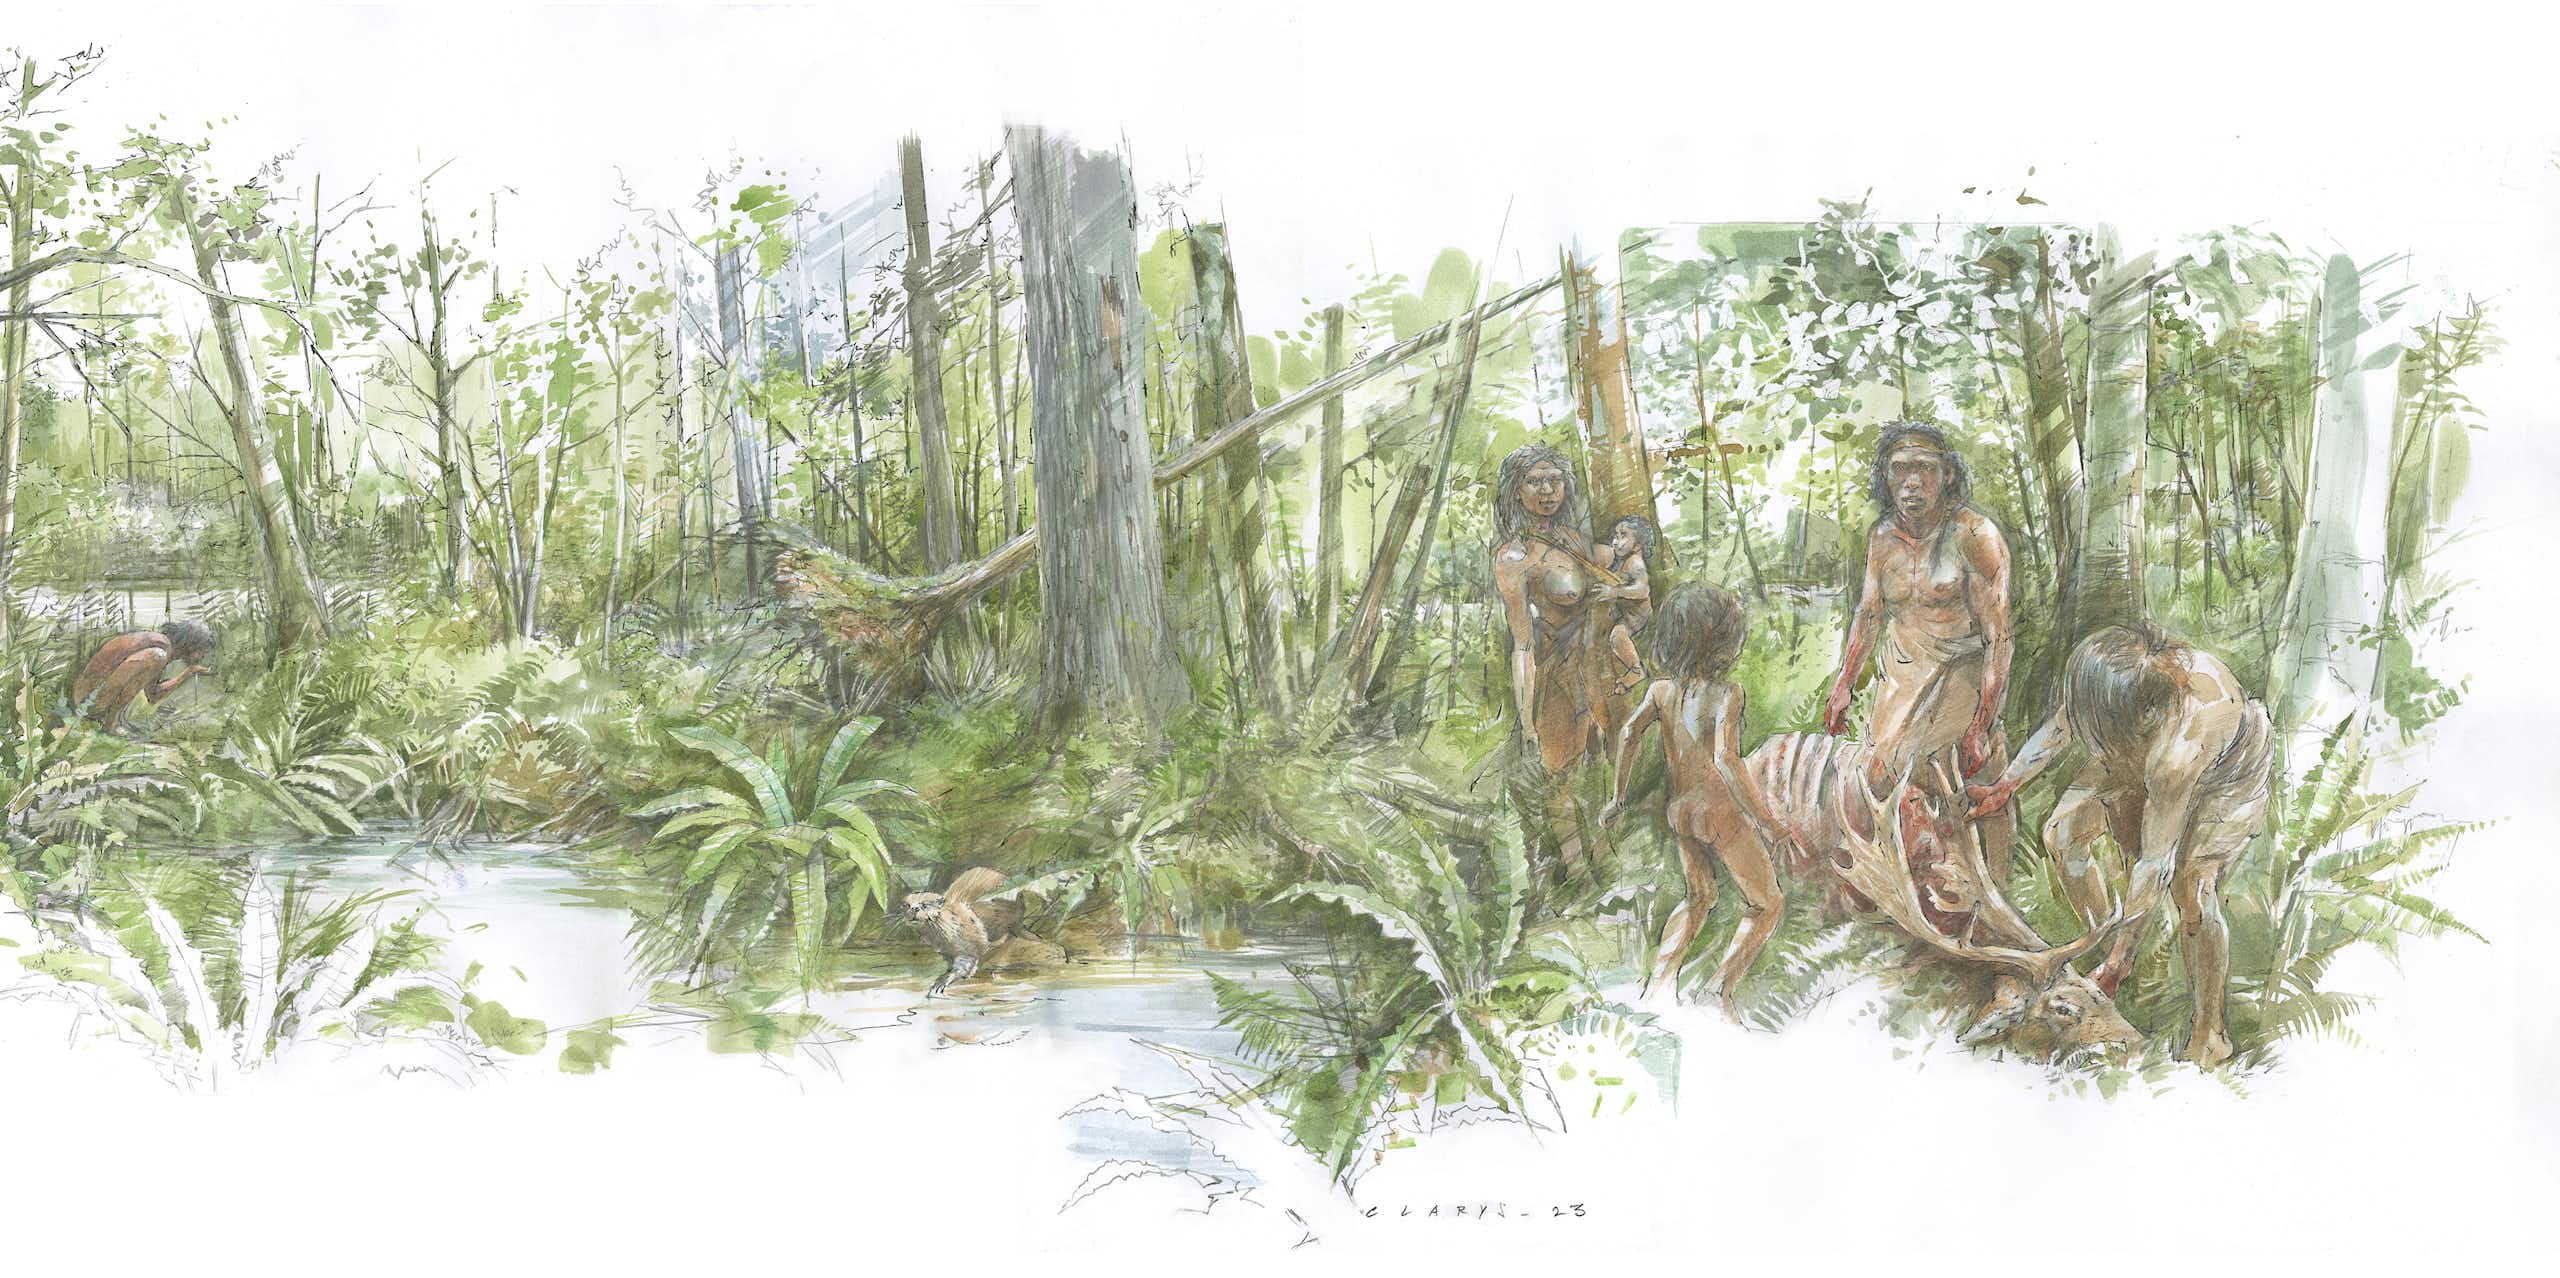 Néandertal : reconstituer son environnement dans le nord de la France il y a 123 000 ans